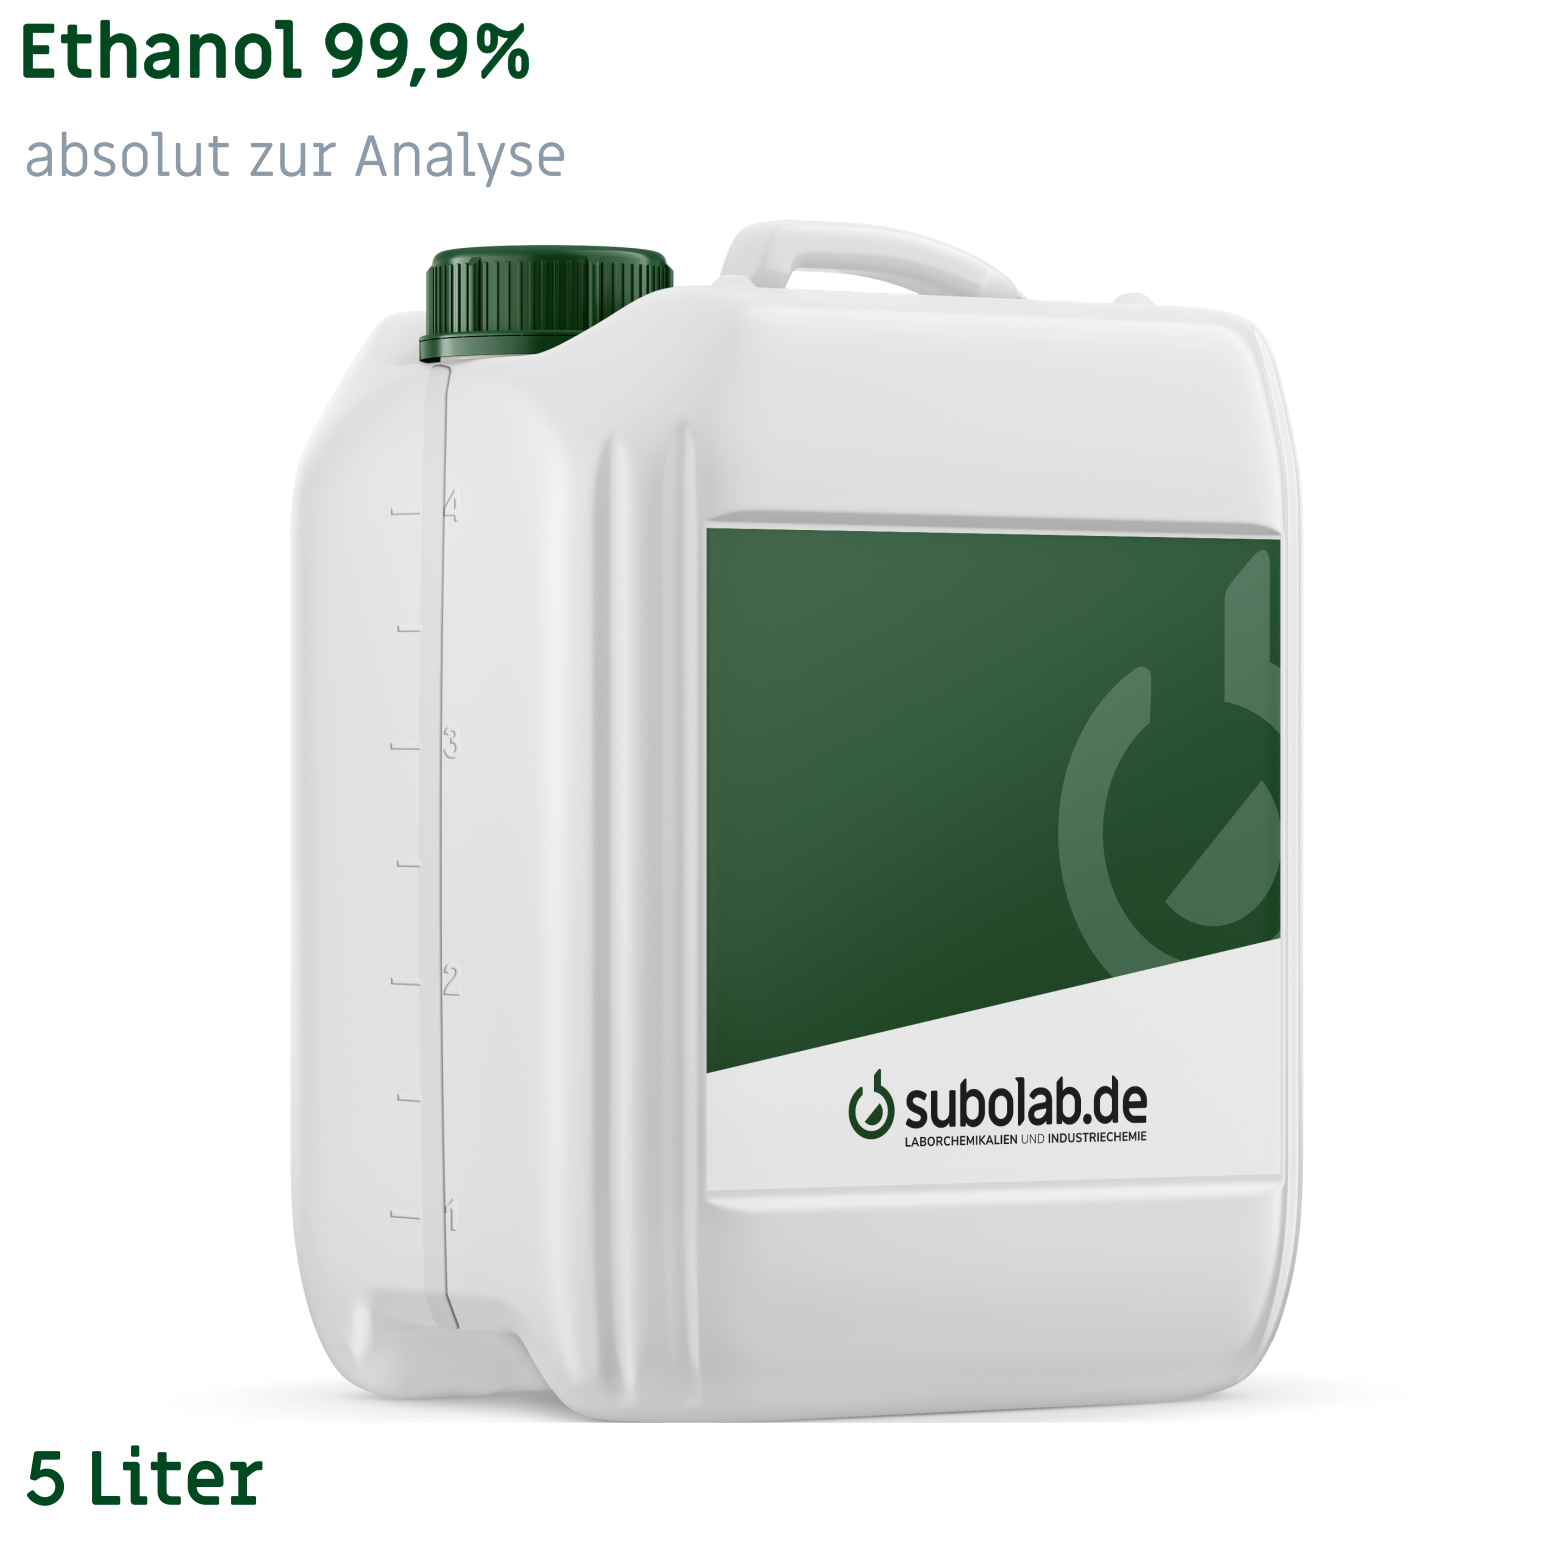 Bild von Ethanol 99,9% absolut zur Analyse (5 Liter)